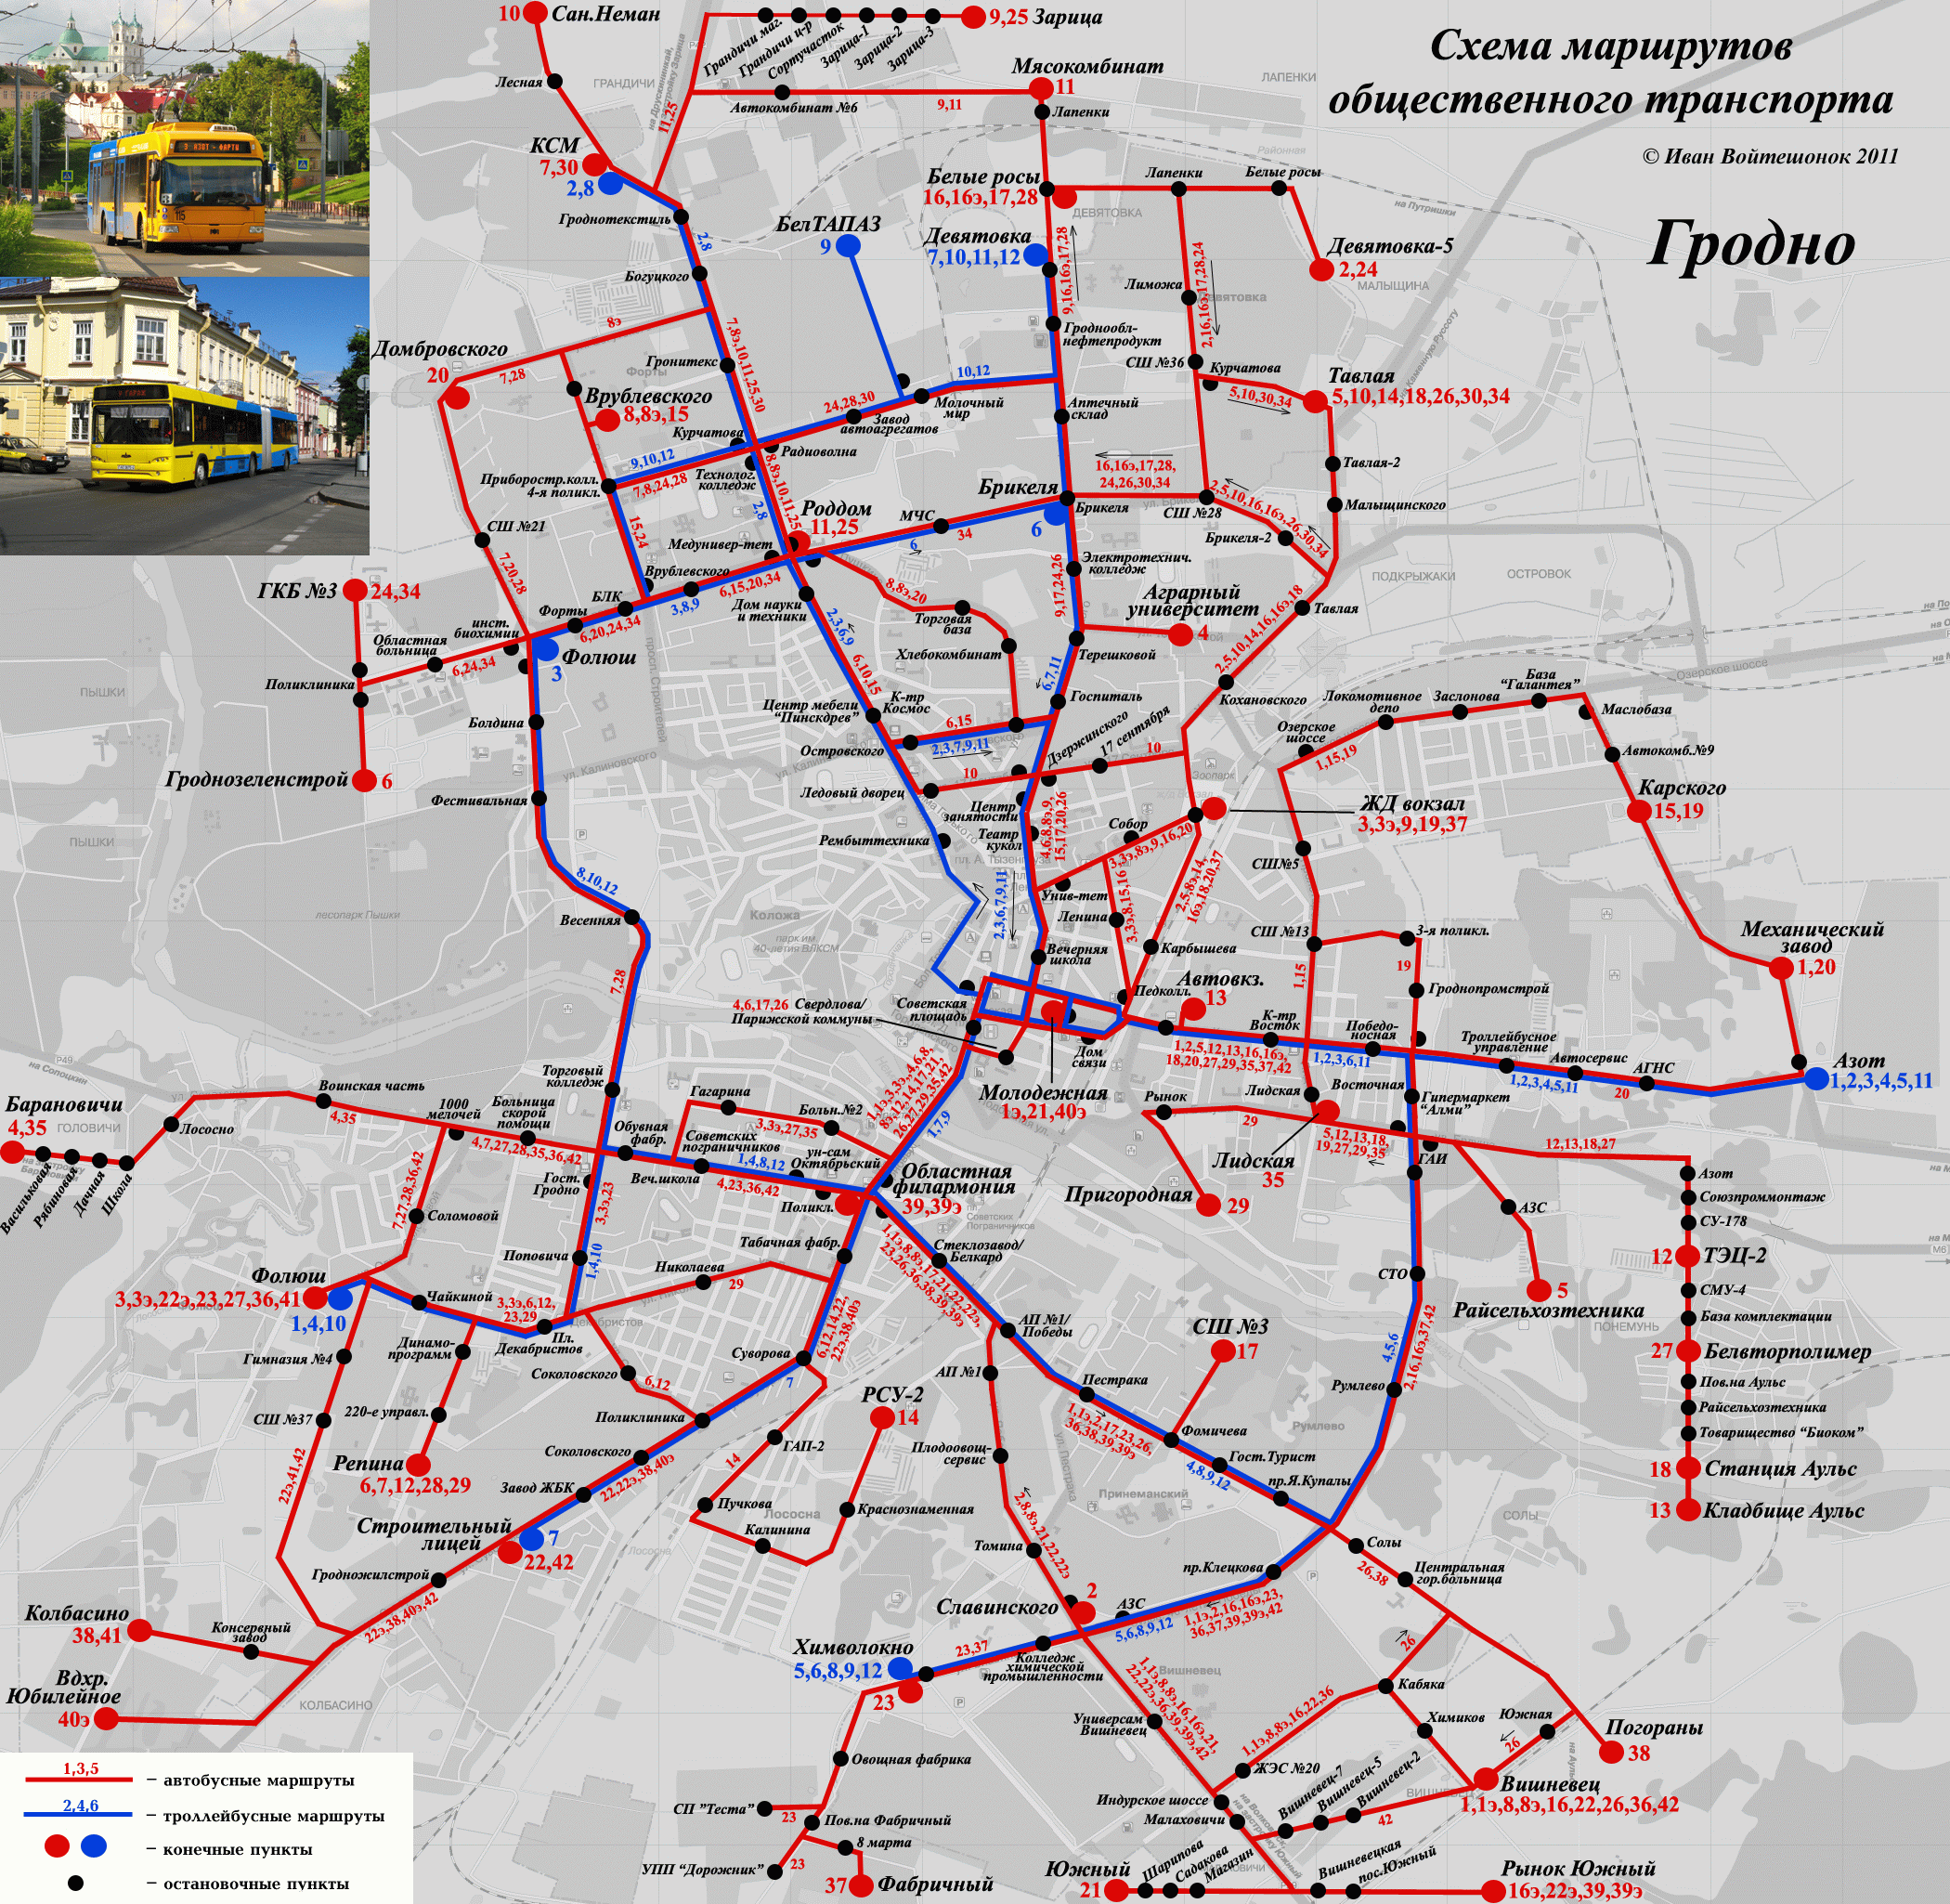 Местоположение гродно. Схема общественного транспорта Гродно. Гродно транспорт схема. Карта маршрутов Гродно. Карта маршрутов общественного транспорта.